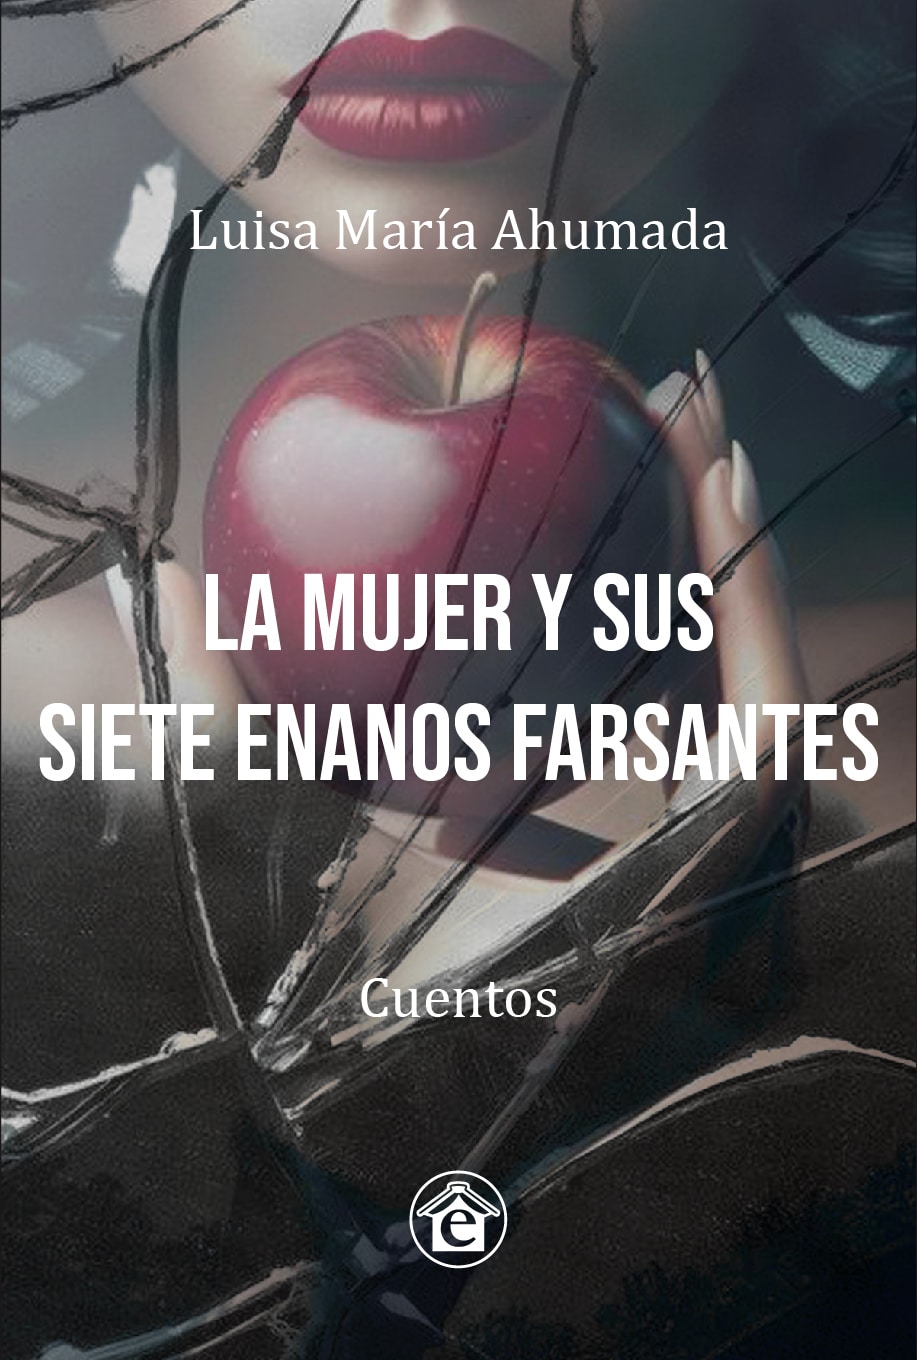 La mujer y sus siete enanos farsantes” de Luisa Ahumada - Revista Algoritmo